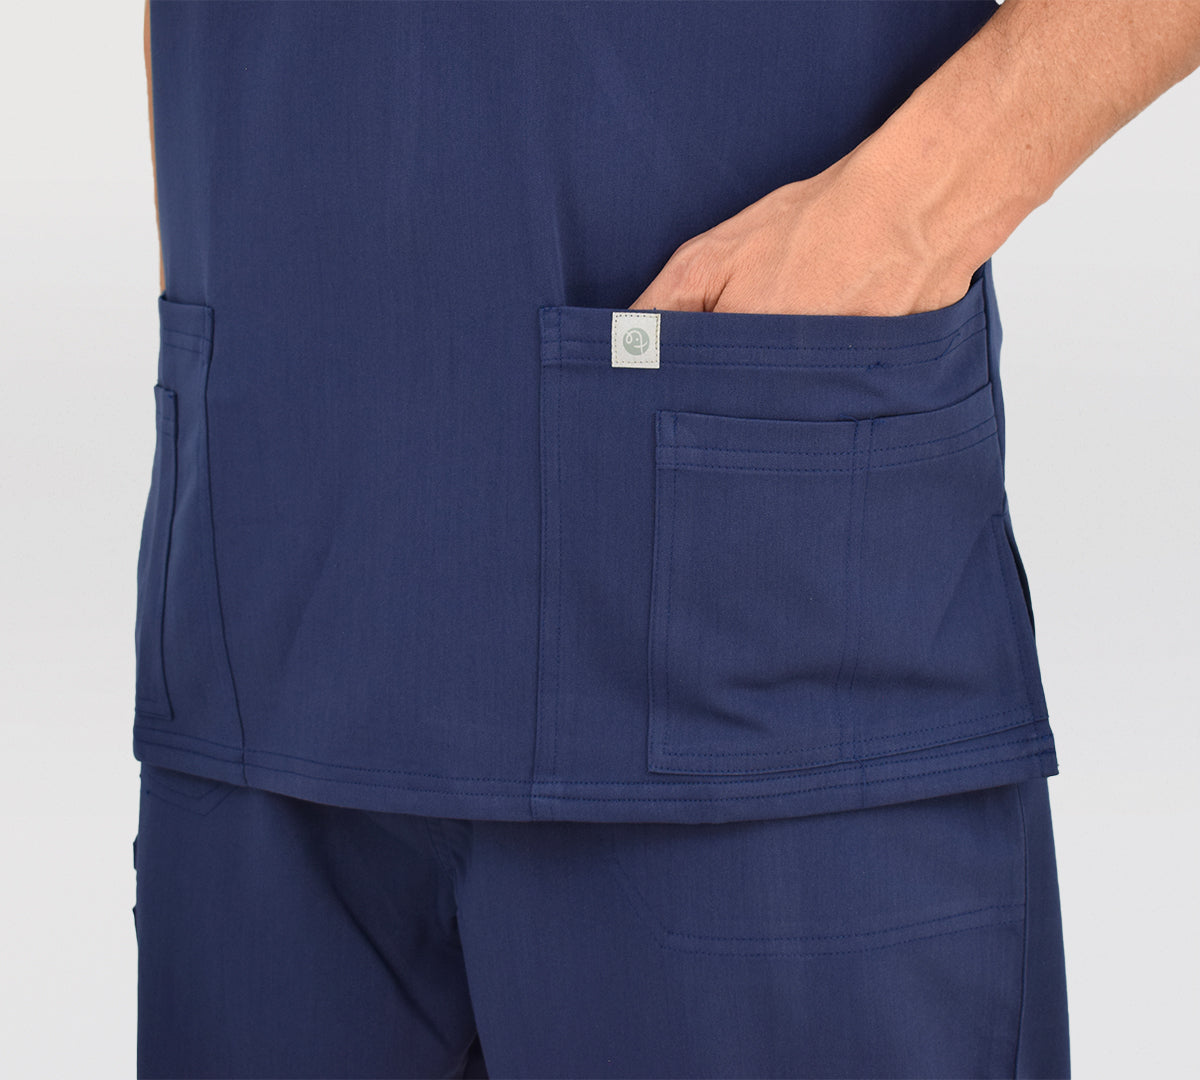 polera clinica hombre azul bolsillos cintura